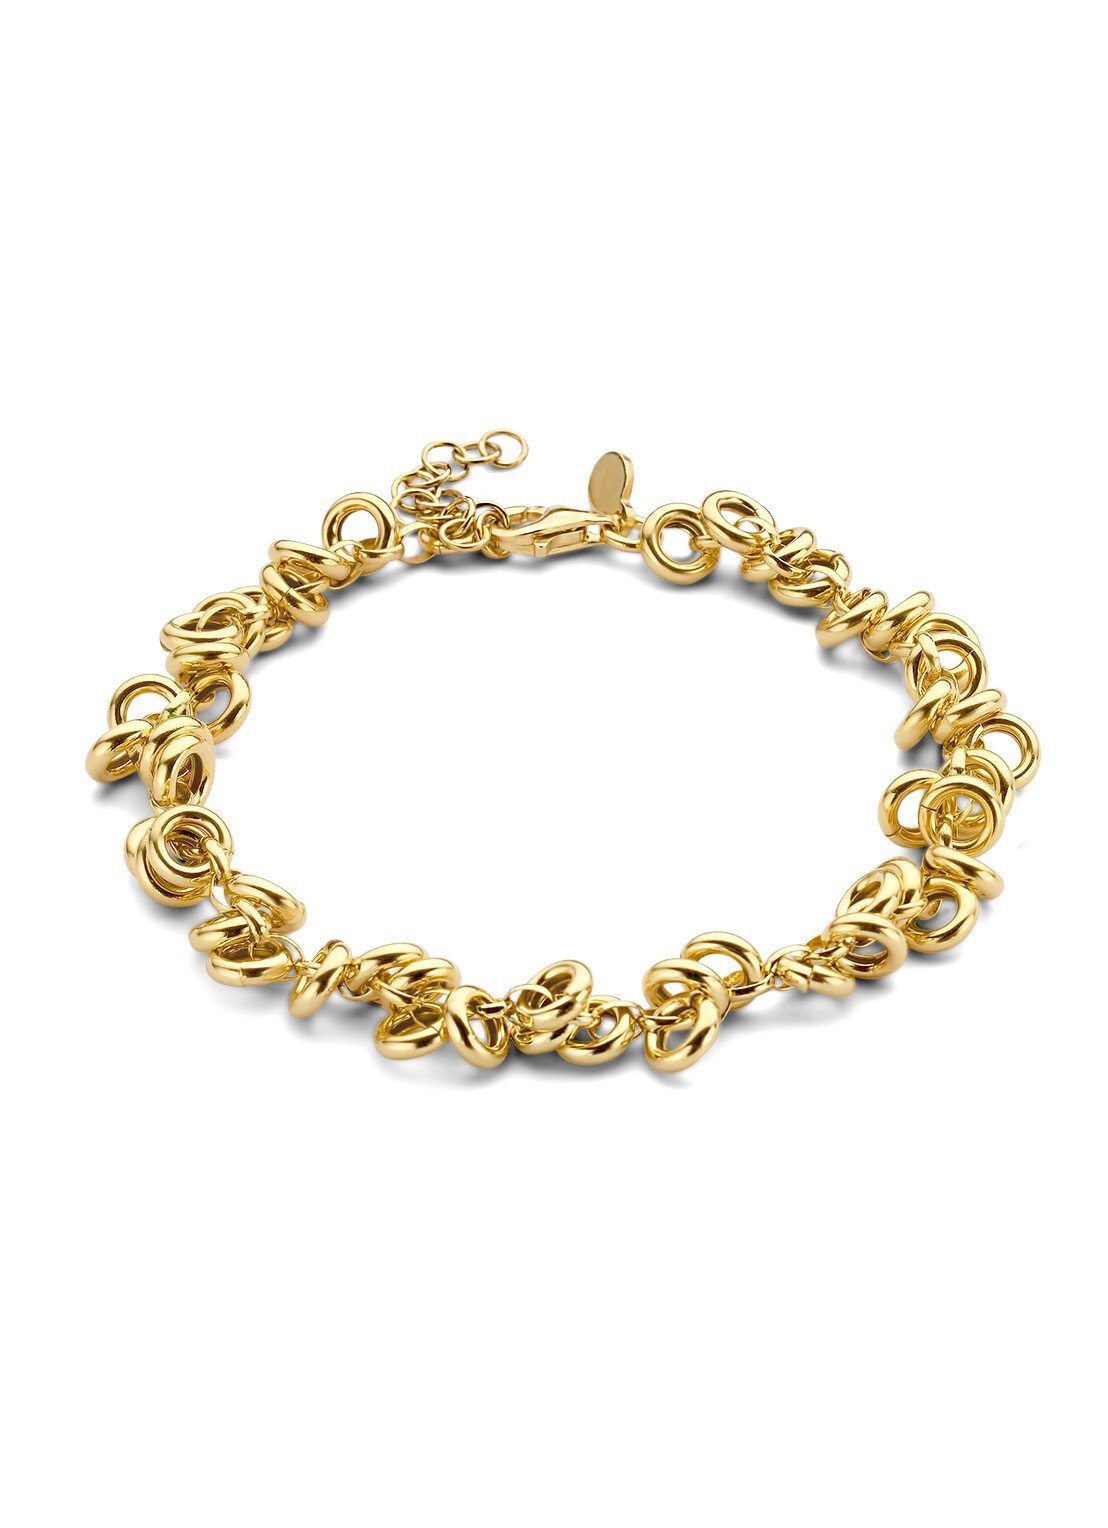 Casa Jewelry Jada armband van zilver met goud verguld